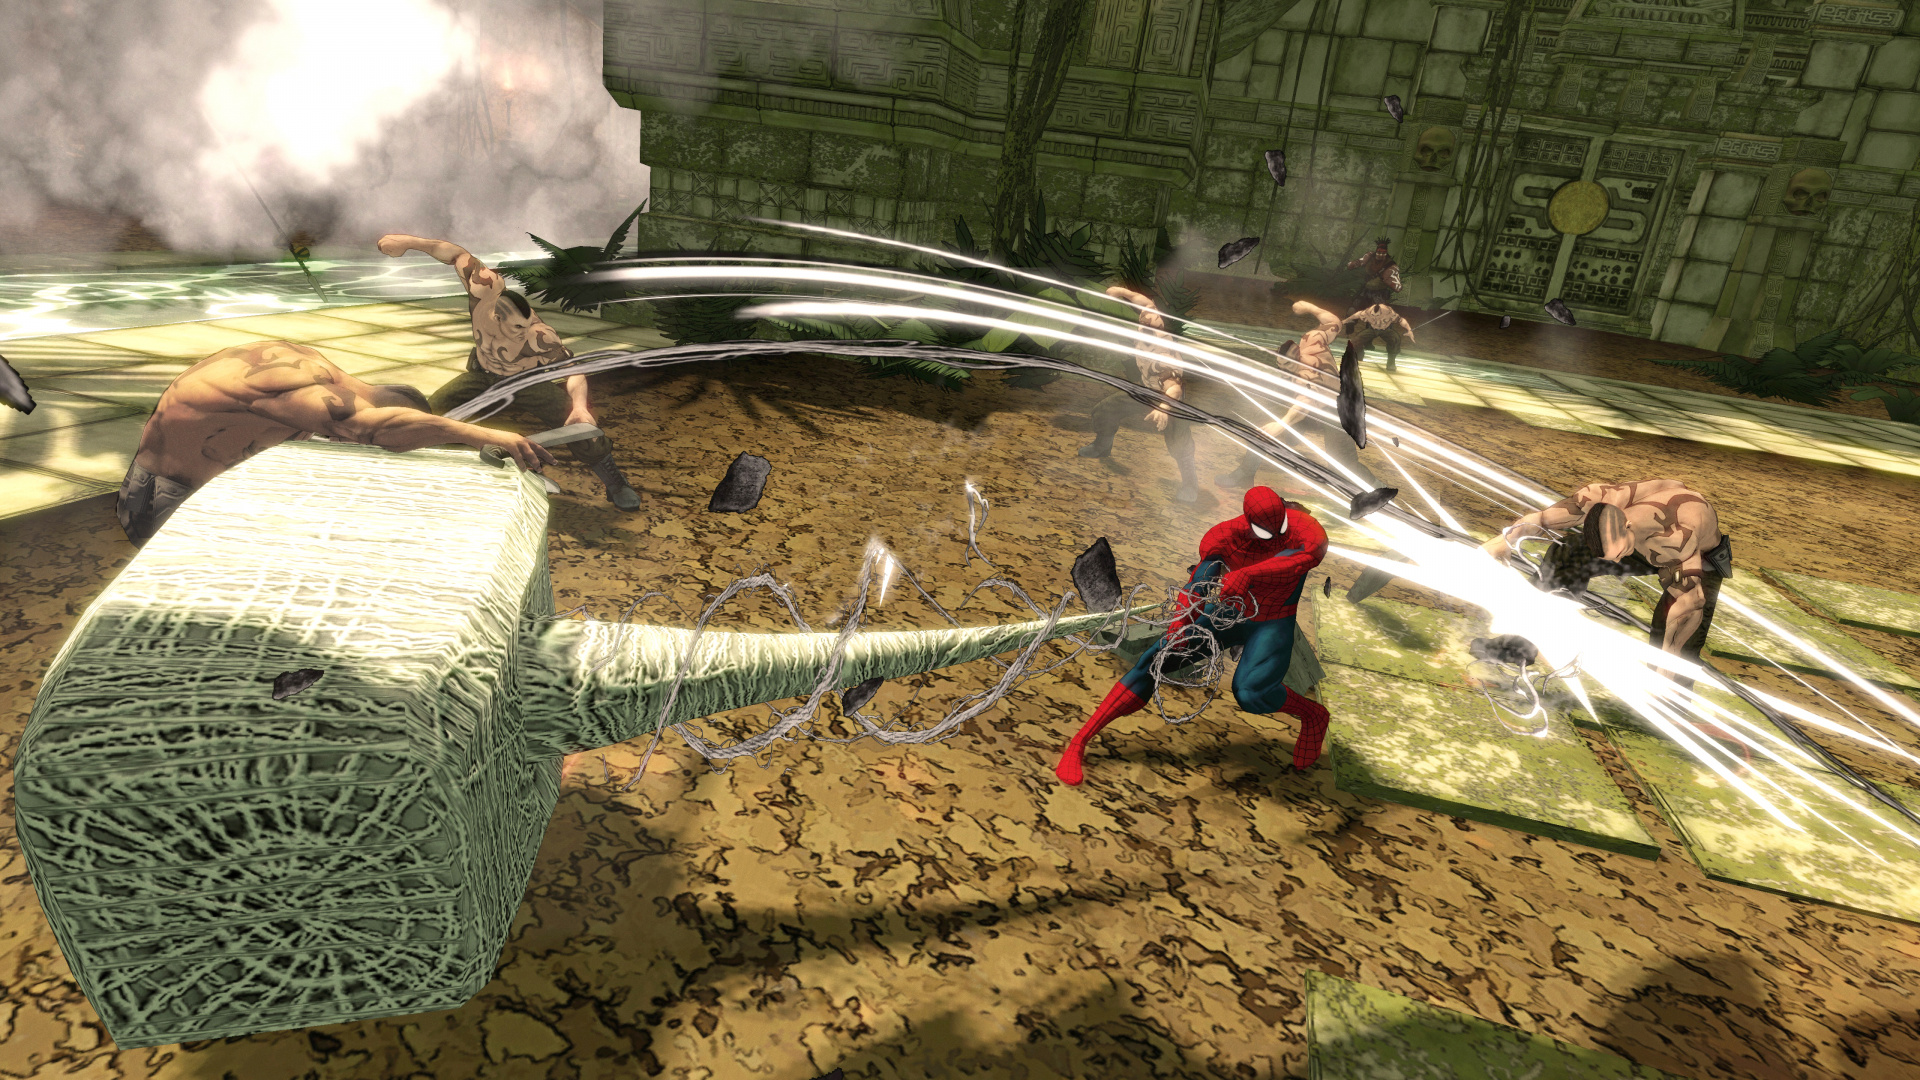 Spider-Man-Shattered Dimensions, Spider-man, Xbox 360, Wii, Pc-Spiel. Wallpaper in 1920x1080 Resolution